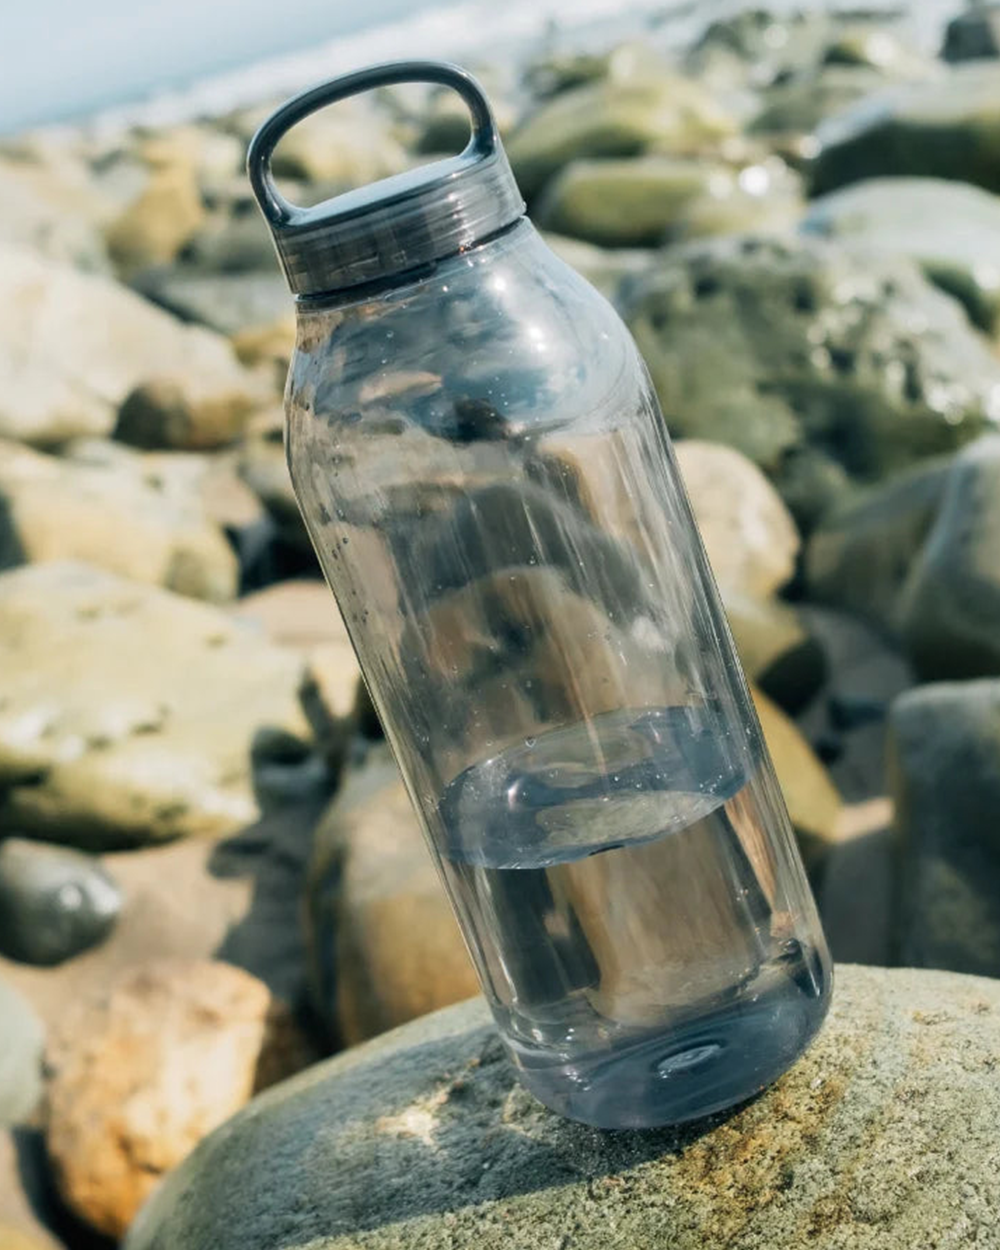 Water Bottle 950ml - Smoke